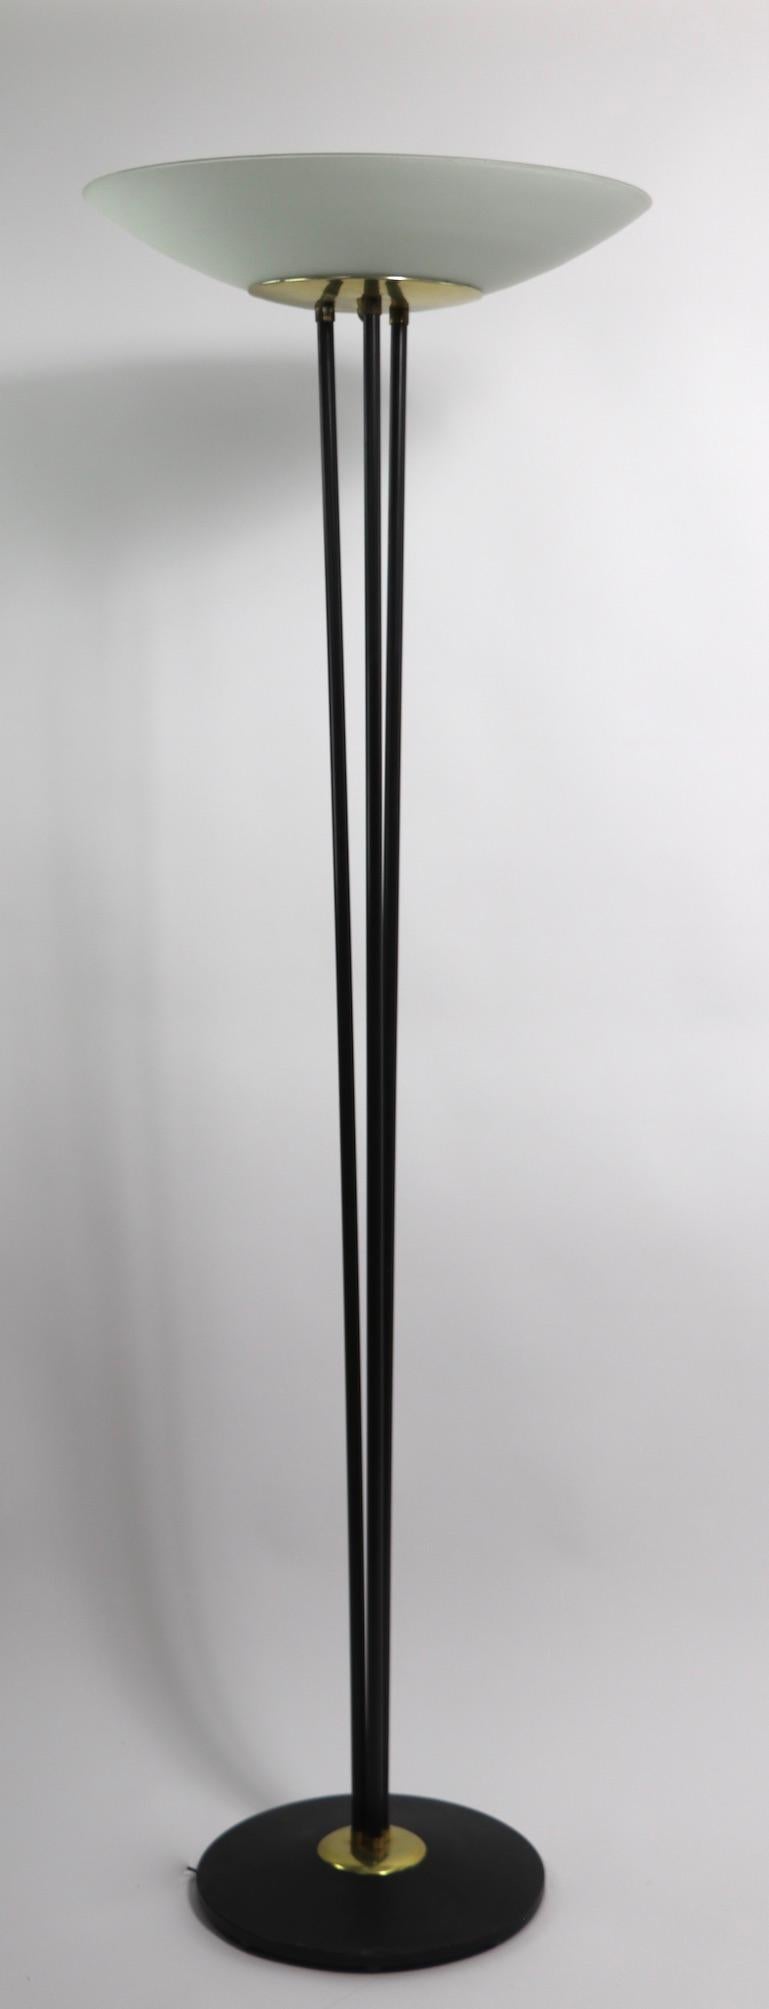 Klassische Mitte des Jahrhunderts  fackel-Stehleuchte, entworfen von Gerald Thurston, für Lightolier. Diese atemberaubende Lampe hat einen schwarzen Sockel, von dem drei Stäbe ausgehen, die sich ausbreiten und eine Messingschale tragen, die den